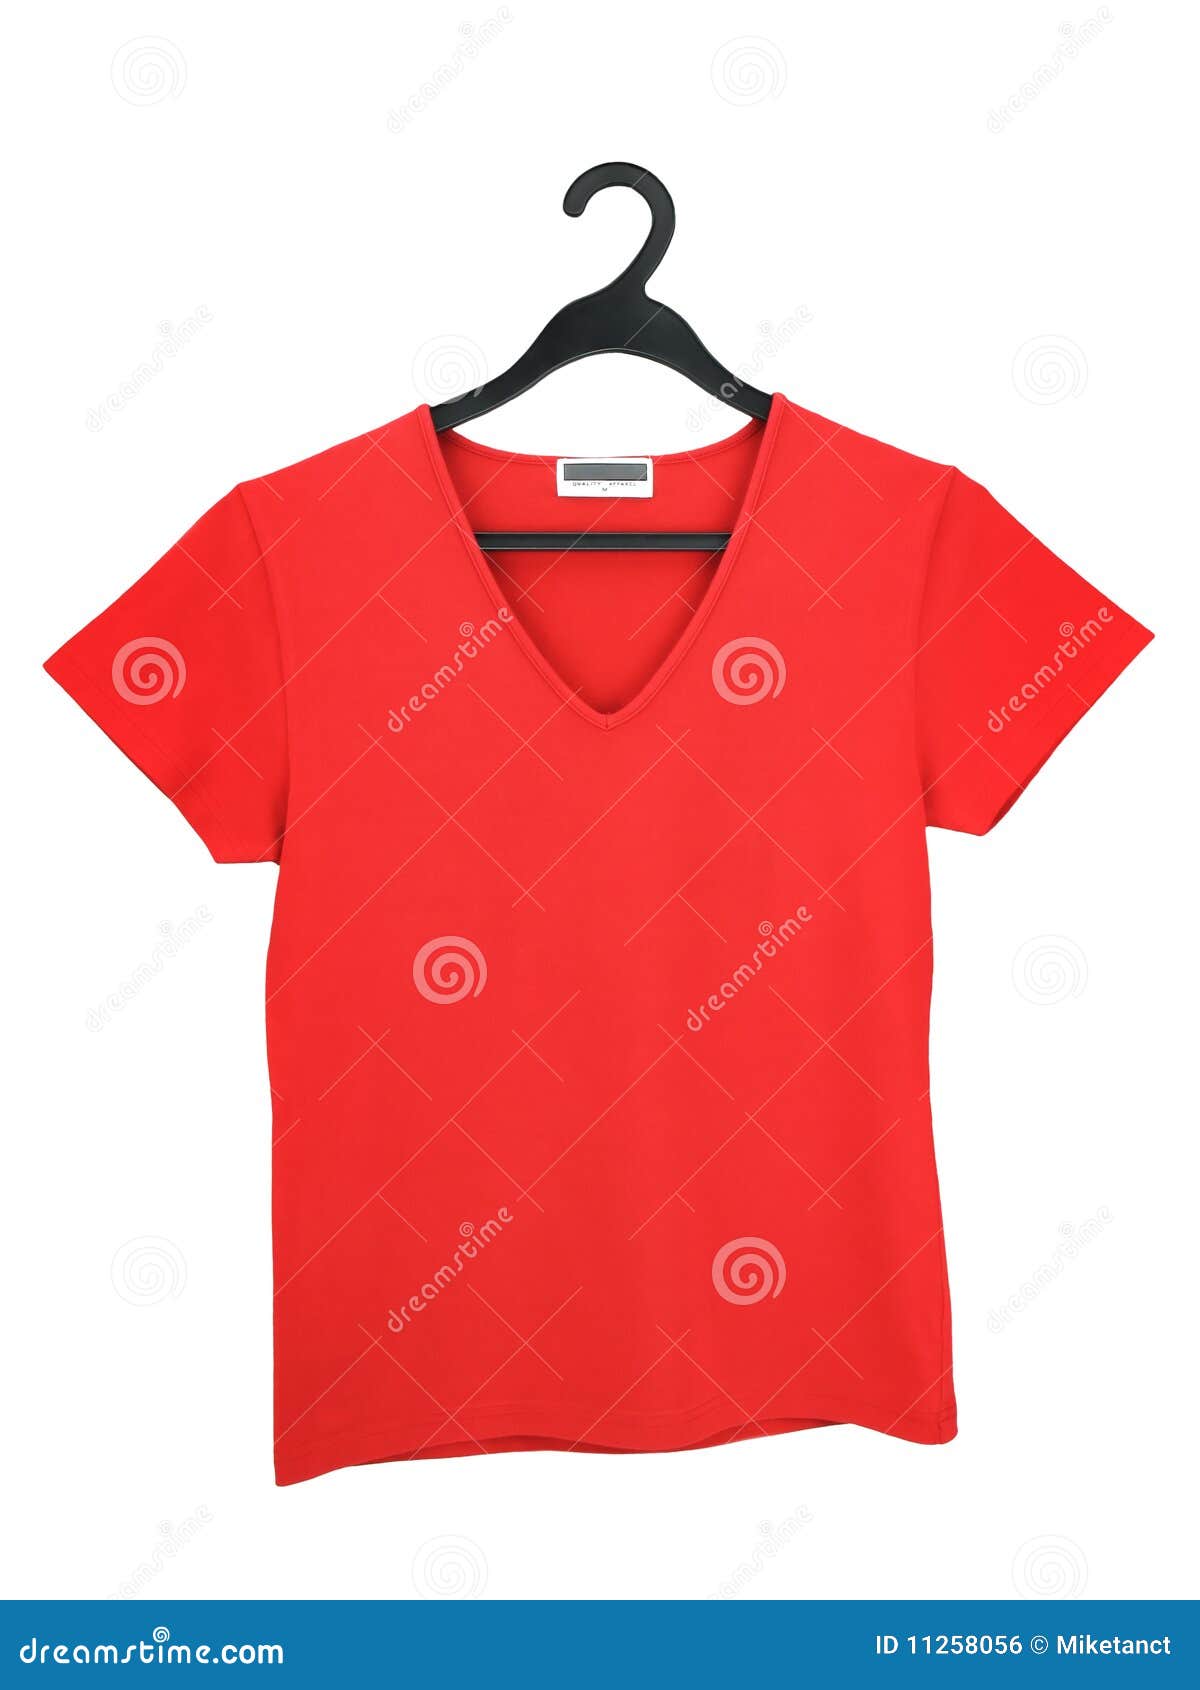 Una Blusa Roja En Una Foto archivo - Imagen de belleza, percha: 11258056